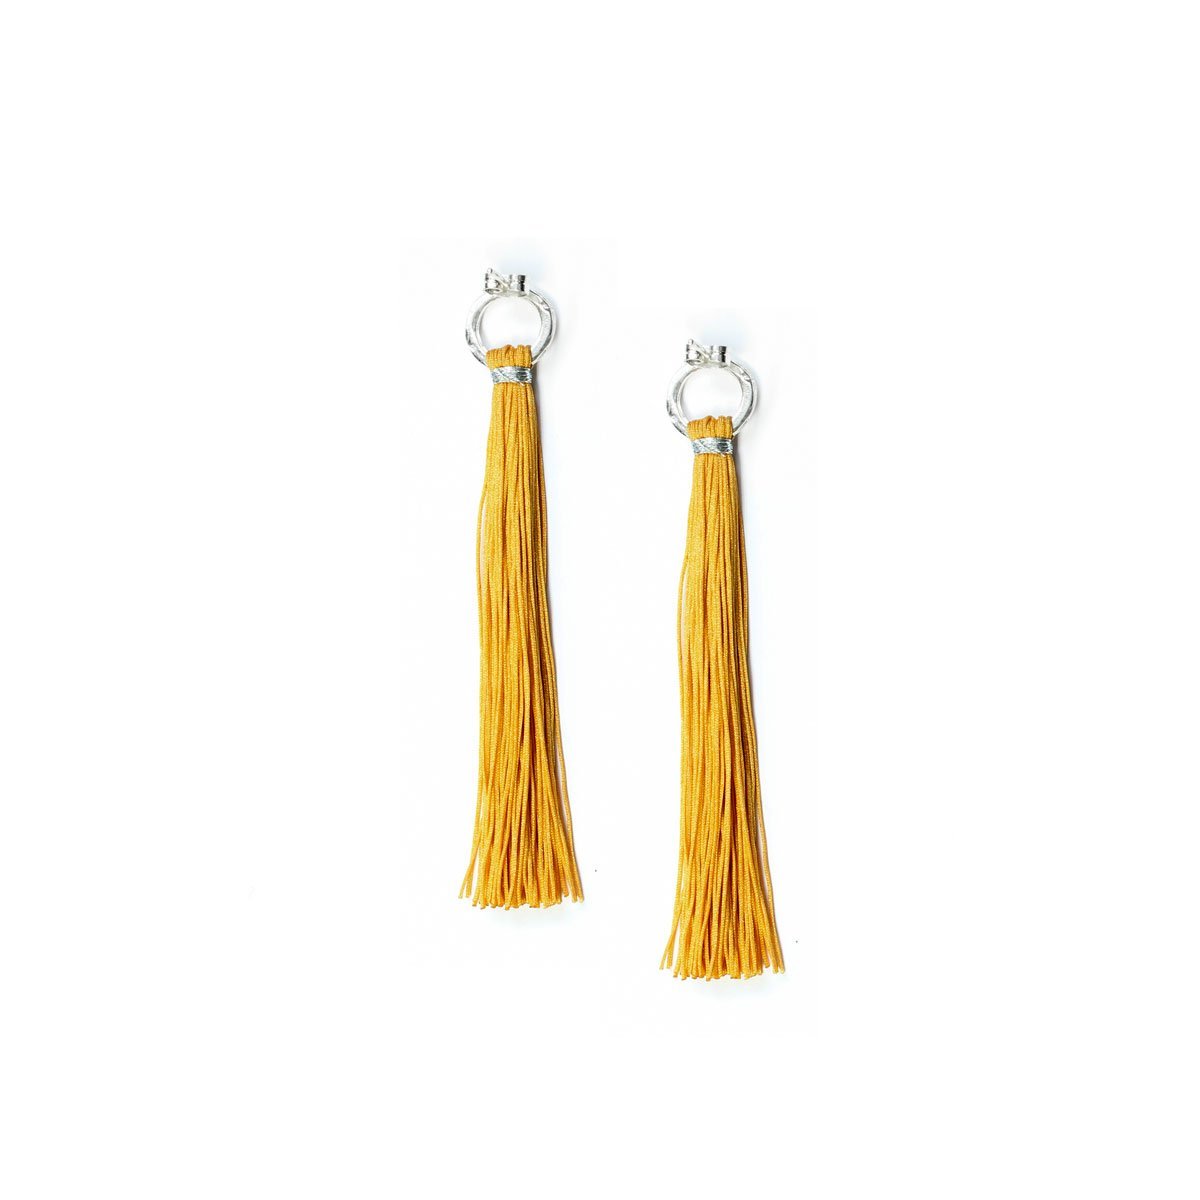 Yellow Beaded Long Fringe Earrings, Sead Bead Tassel Earrings (138)